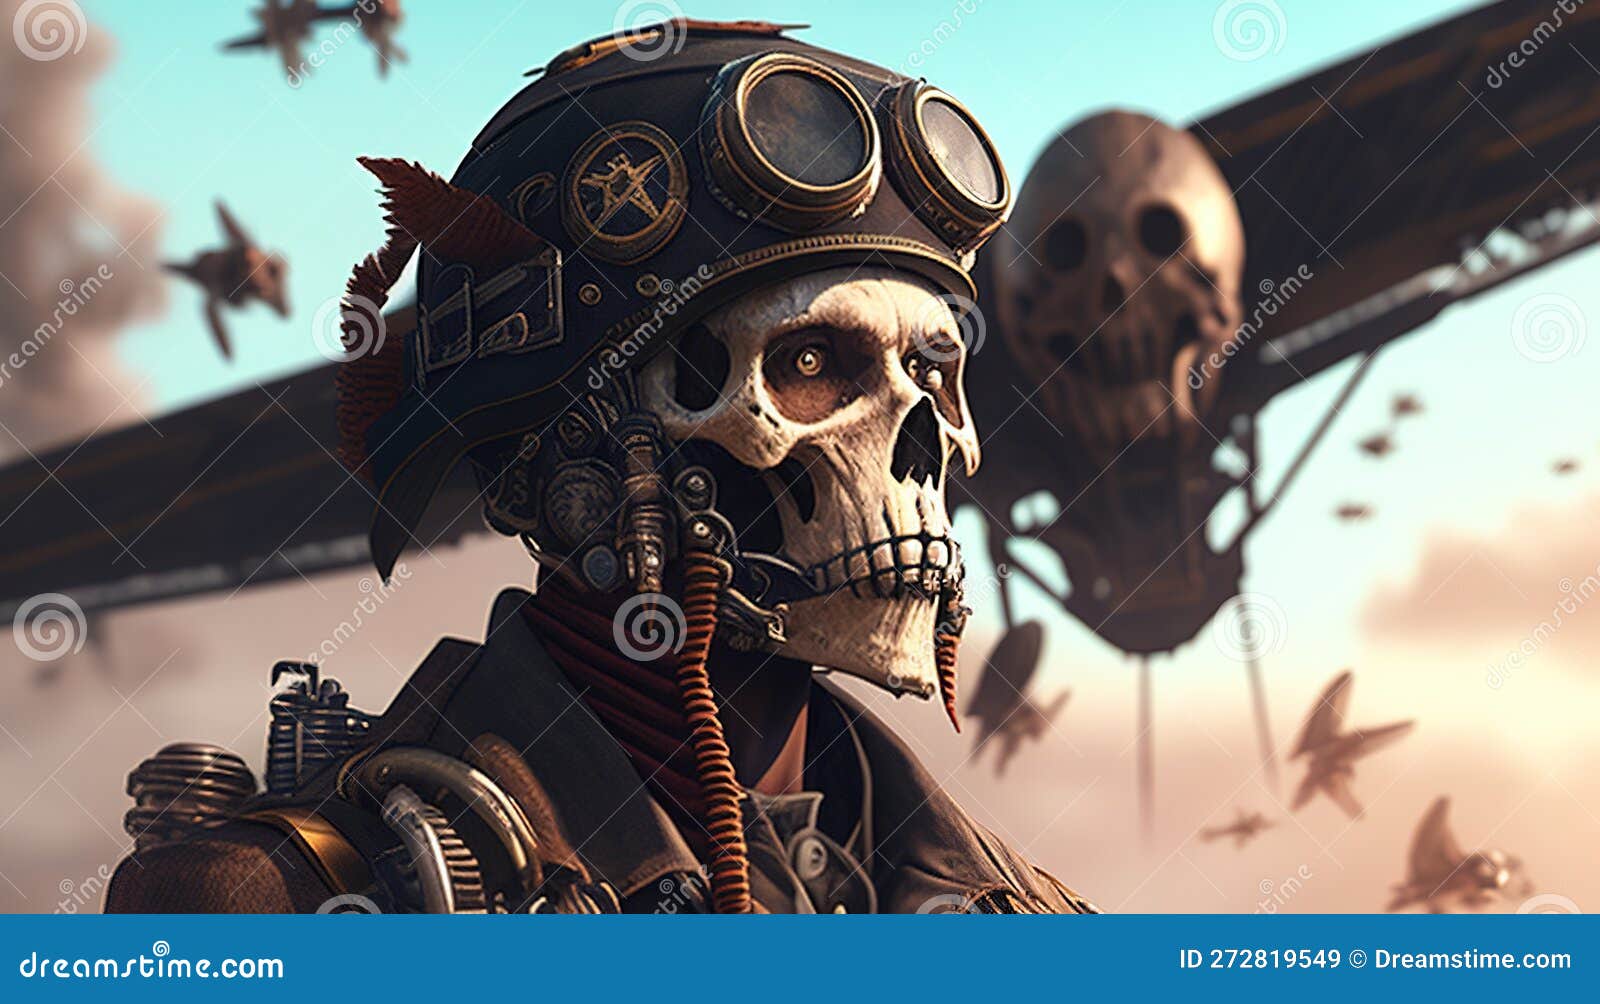 Painted Temple : Tattoos : Skull : Matt Morrison Skeleton Bomber Pilot